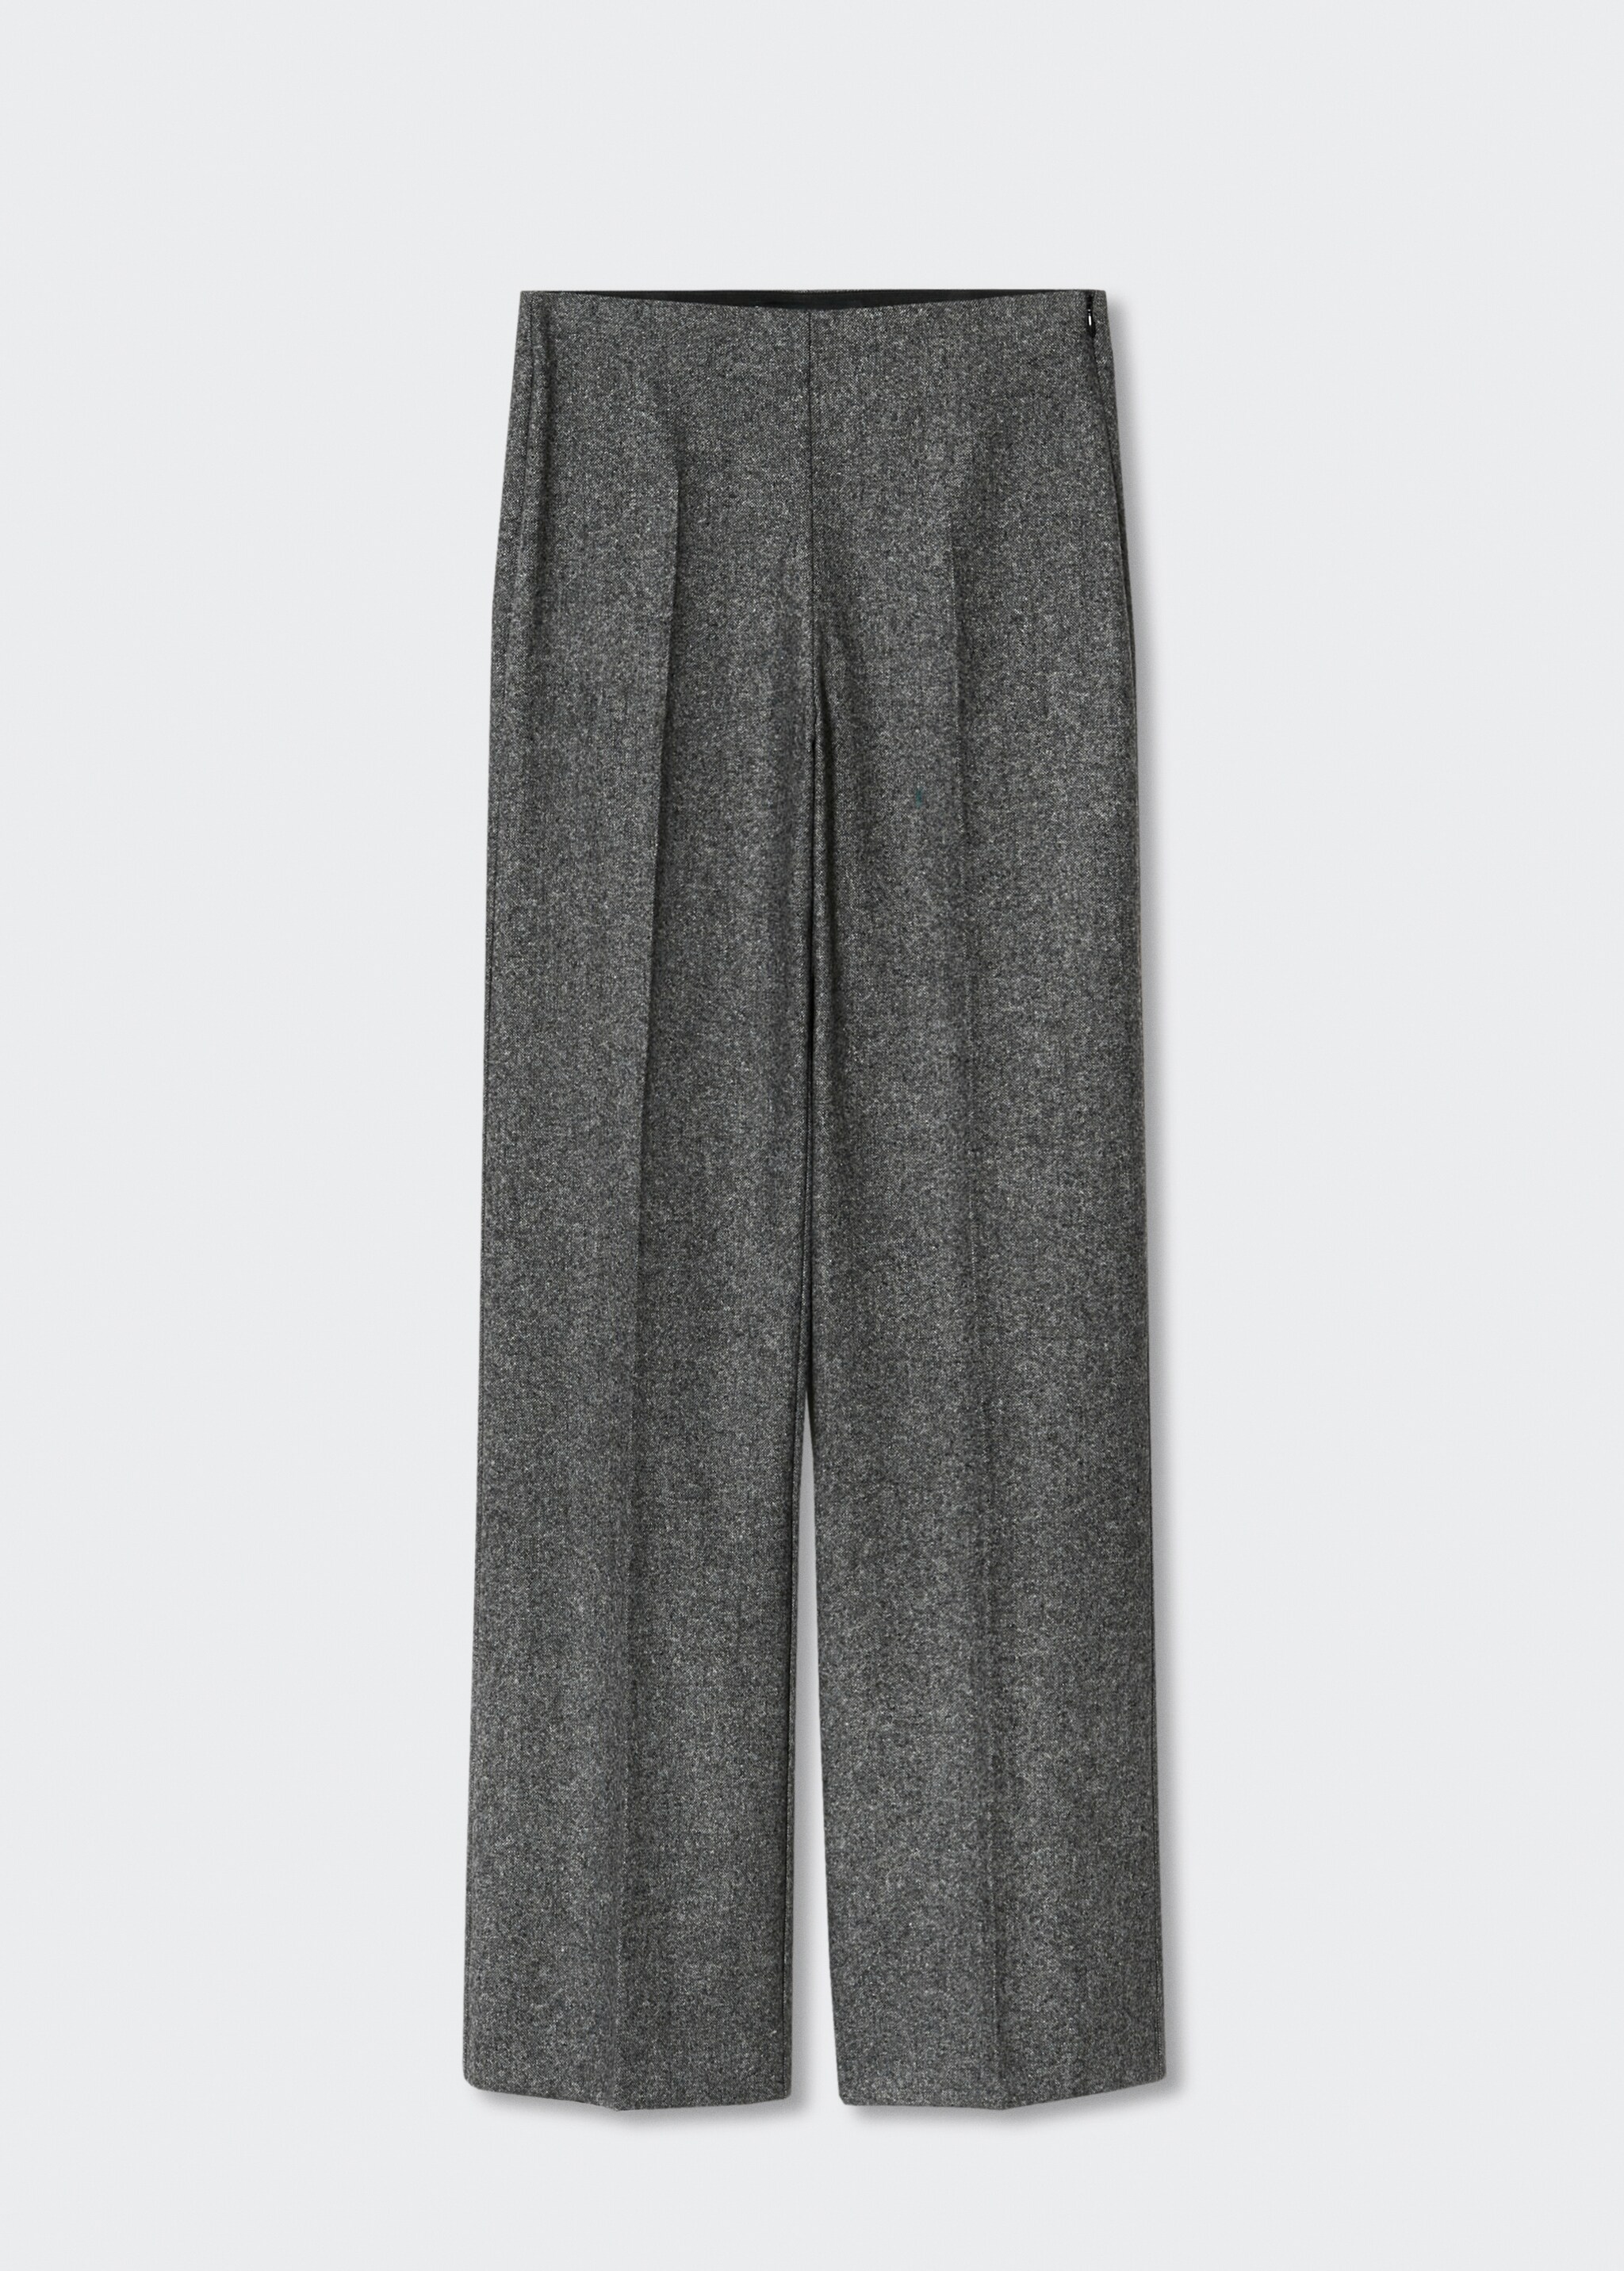 Pantalón traje lana - Artículo sin modelo